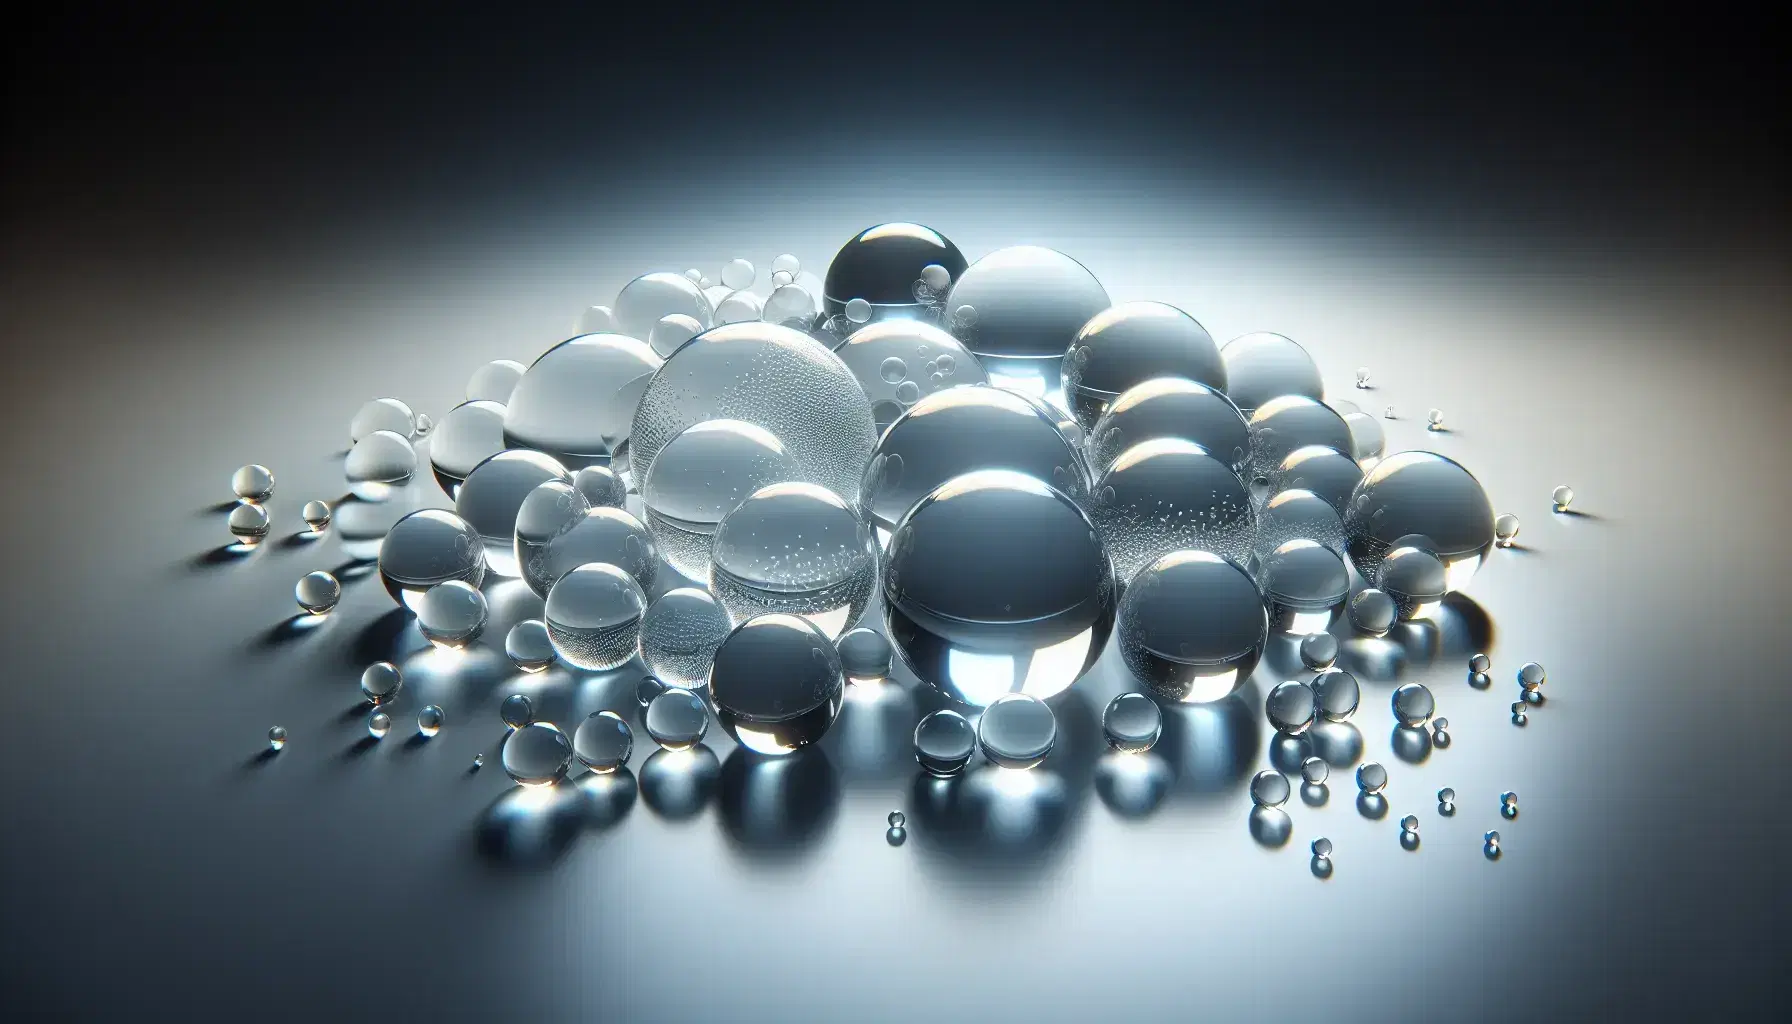 Esferas de vidrio transparentes de distintos tamaños sobre superficie blanca reflejando y refractando la luz, creando un efecto tridimensional.